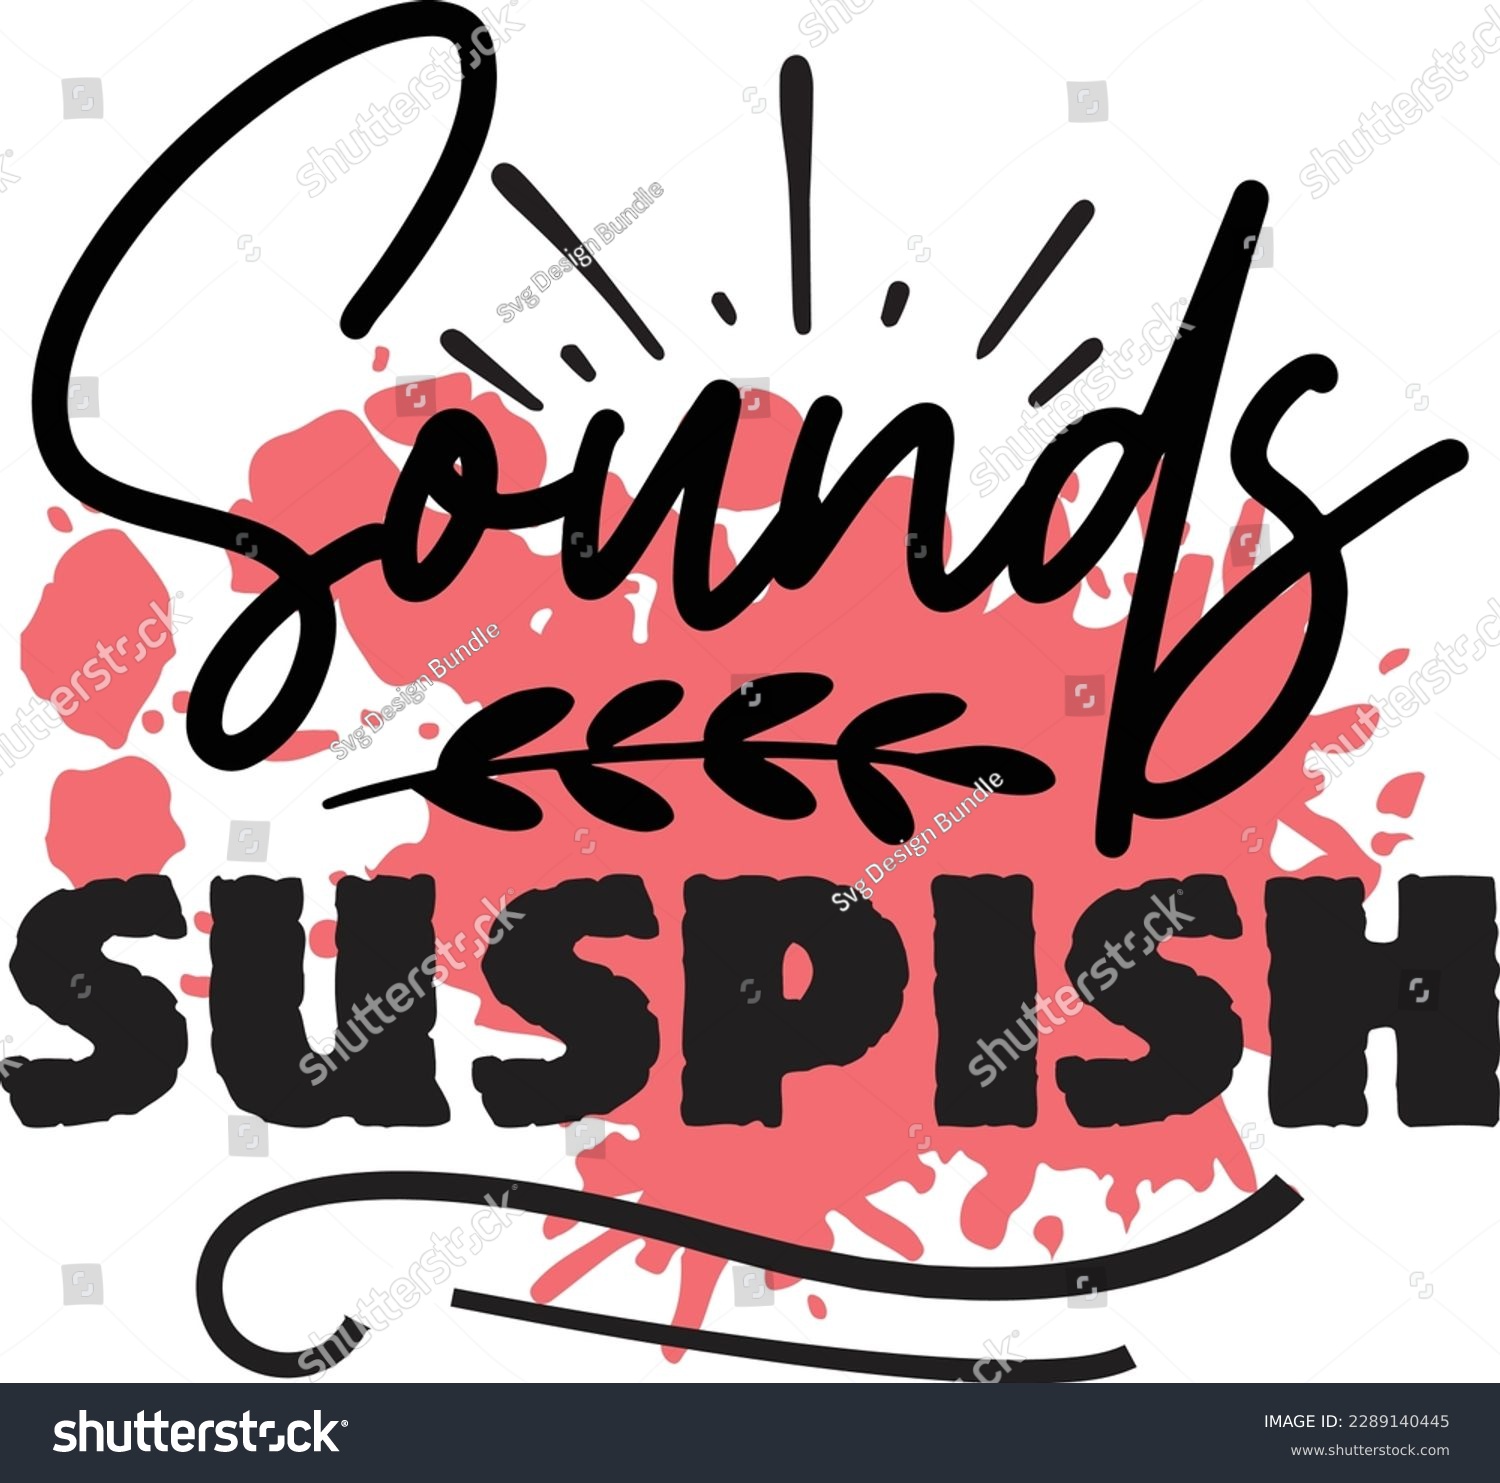 SVG of Sounds Suspish svg ,Crime svg Design, Crime svg bundle svg